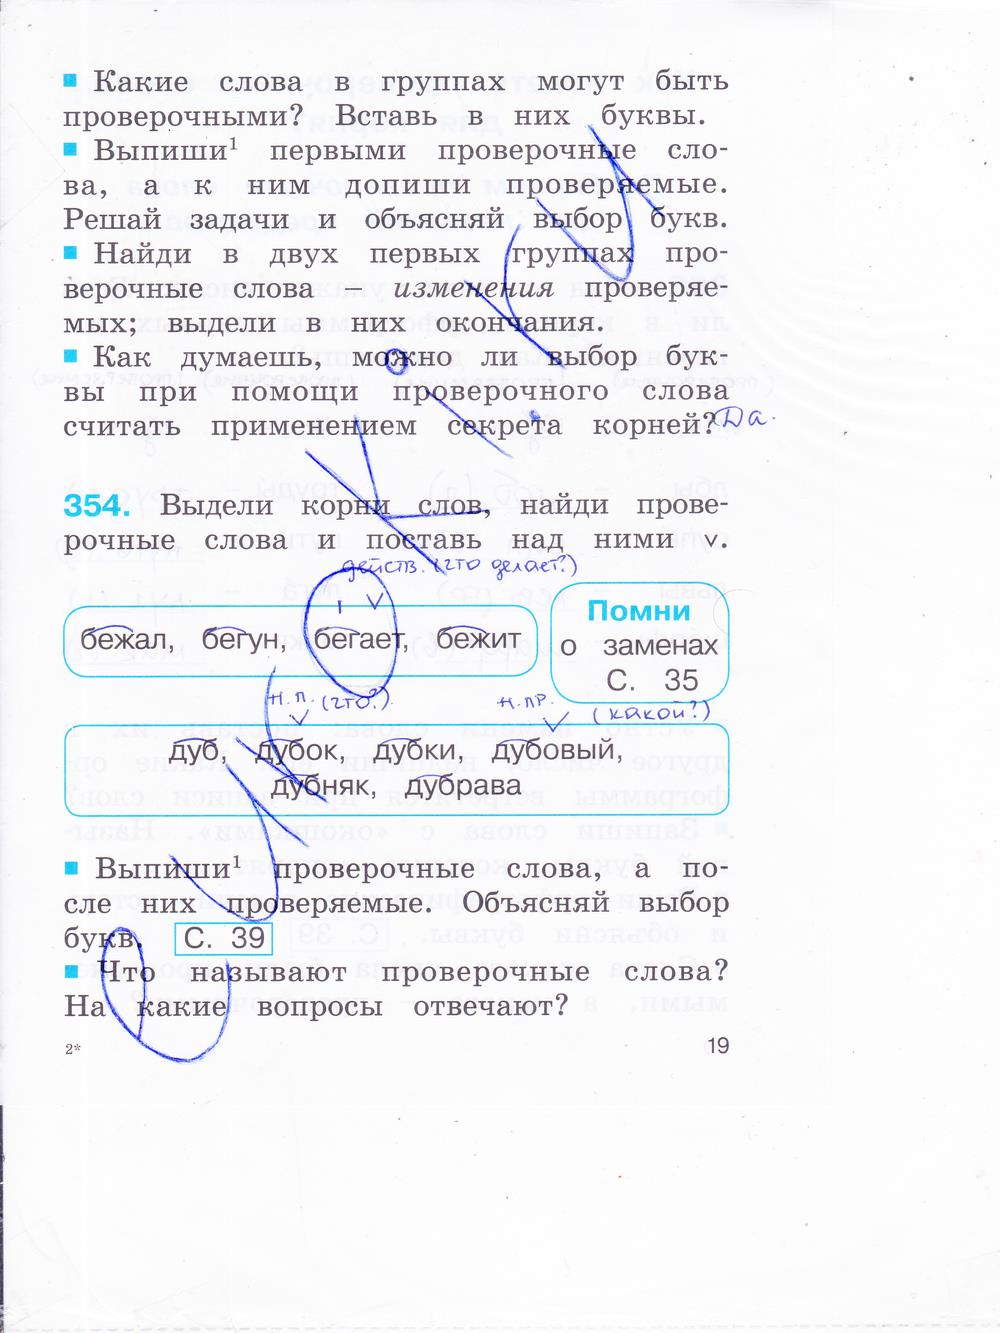 гдз 2 класс рабочая тетрадь часть 2 страница 19 русский язык Соловейчик, Кузьменко